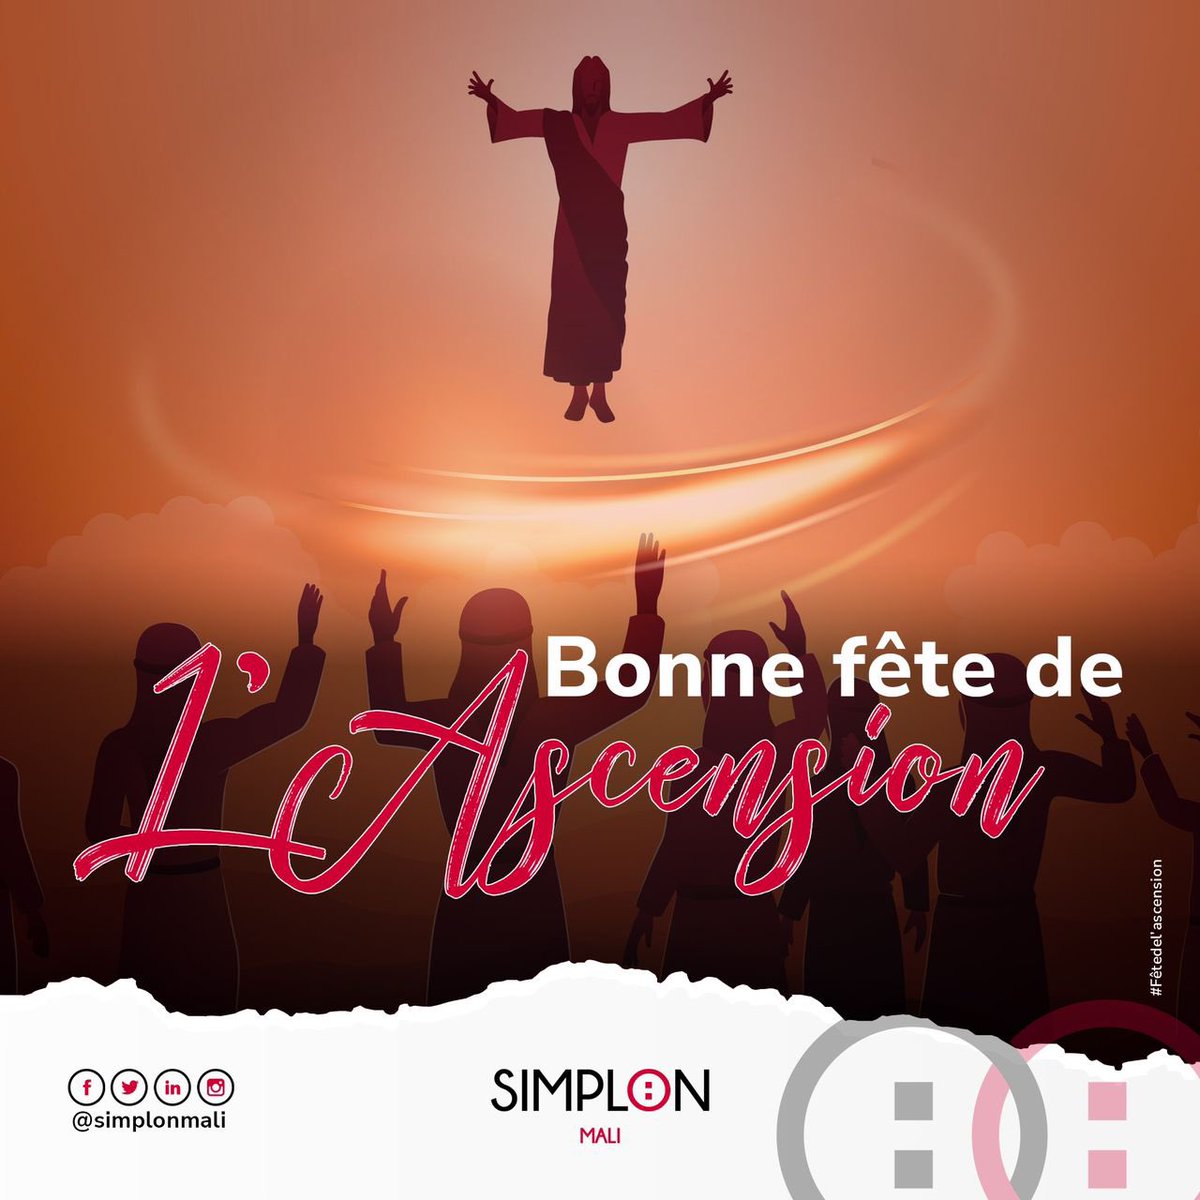 #Fêtedelascension 

En ce jour spécial, toute l’équipe de Simplon Mali souhaite une joyeuse fête de 𝙇´𝘼𝙨𝙘𝙚𝙣𝙨𝙞𝙤𝙣 à toute la communauté chrétienne 🙏

#SimplonMali #fête #ascension #bonnefête